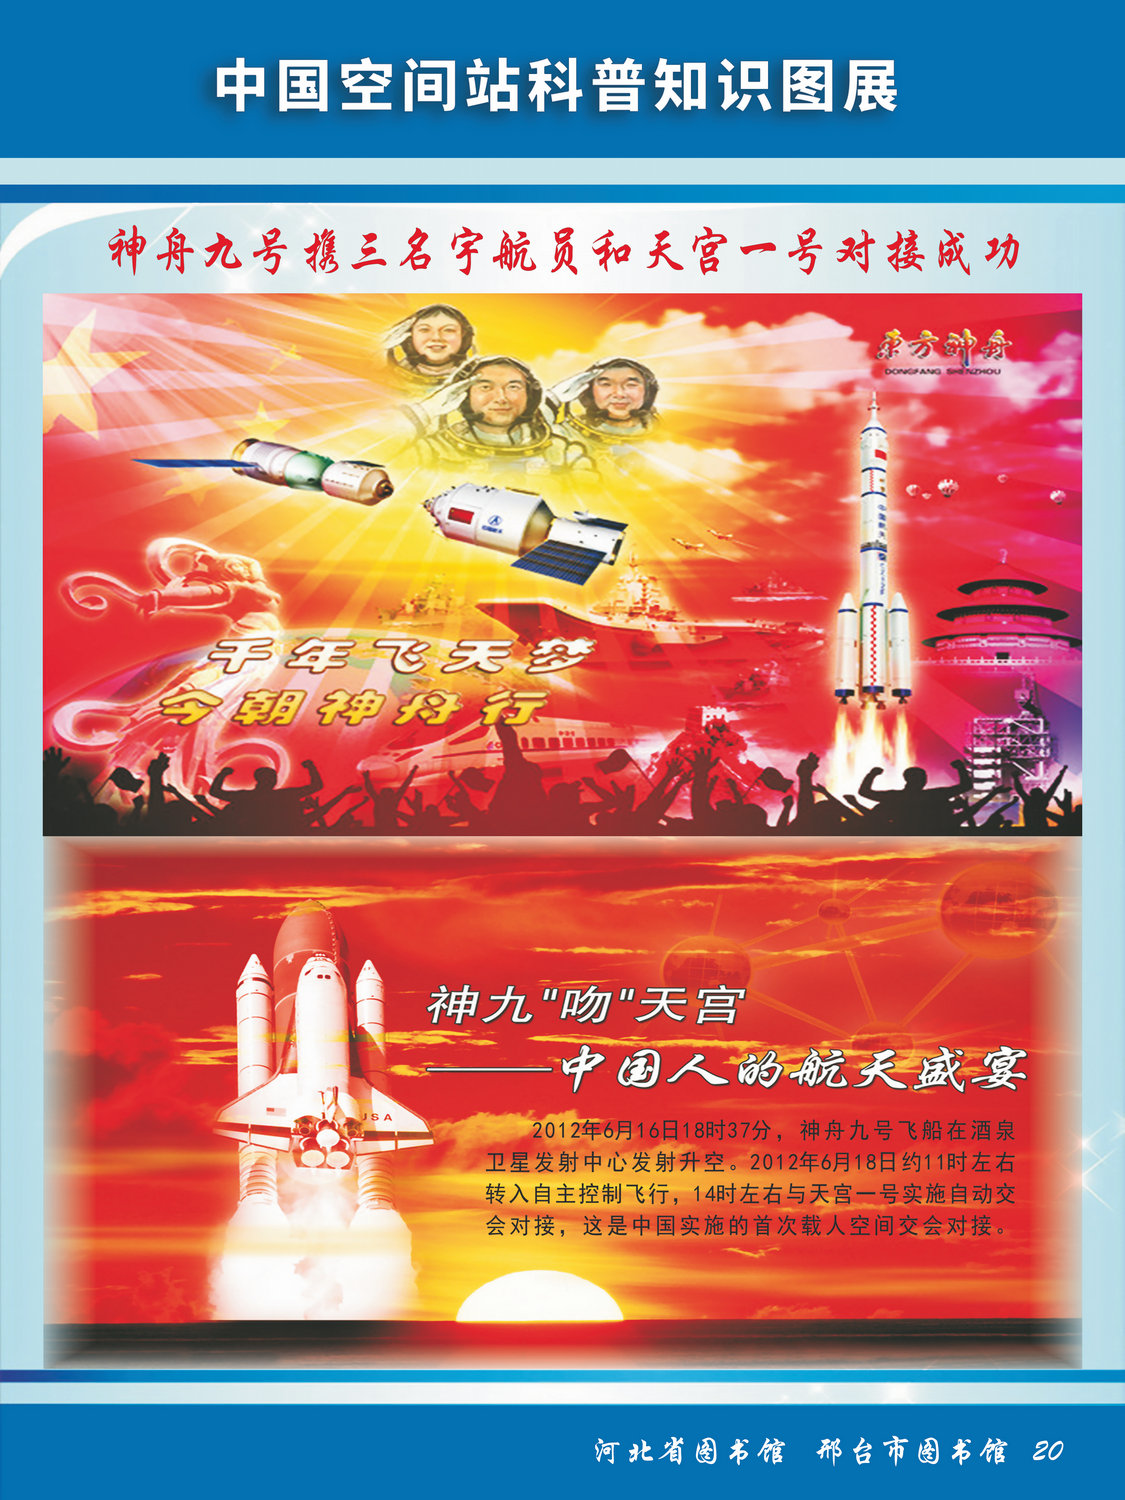 中国空间站科普知识图文展_图20